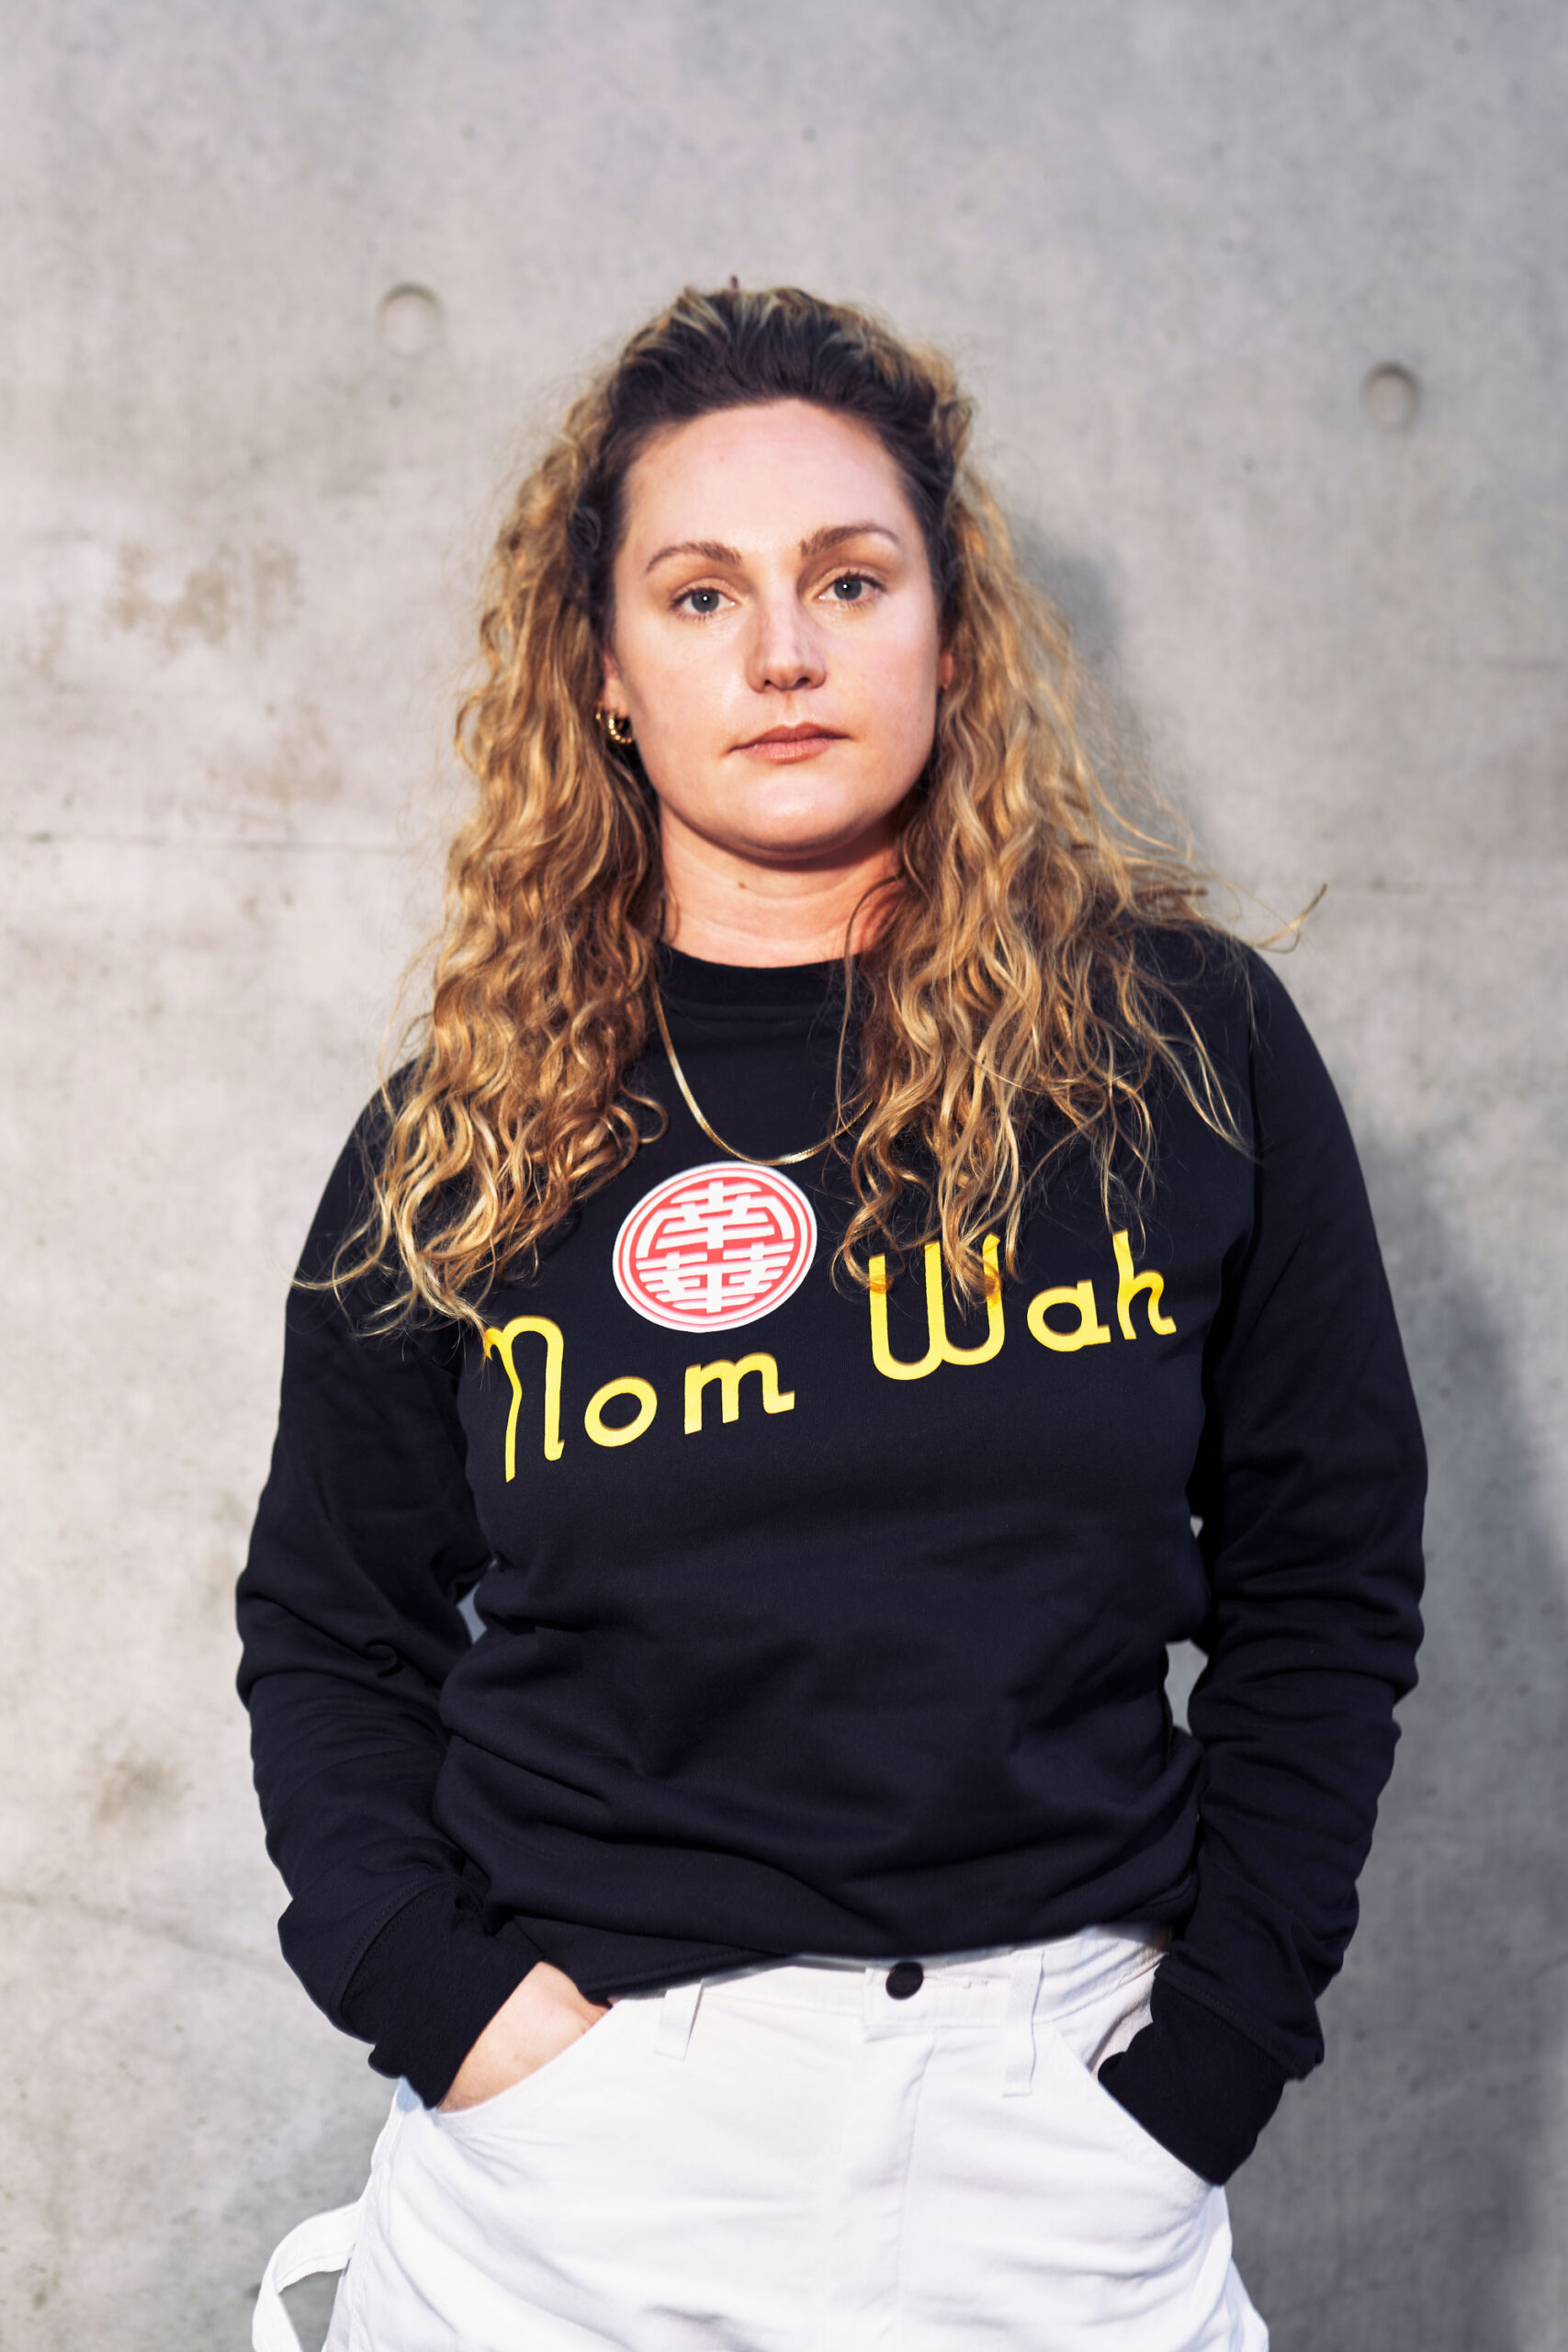 Nom Wah sweatshirt, modeled by Alex Baker